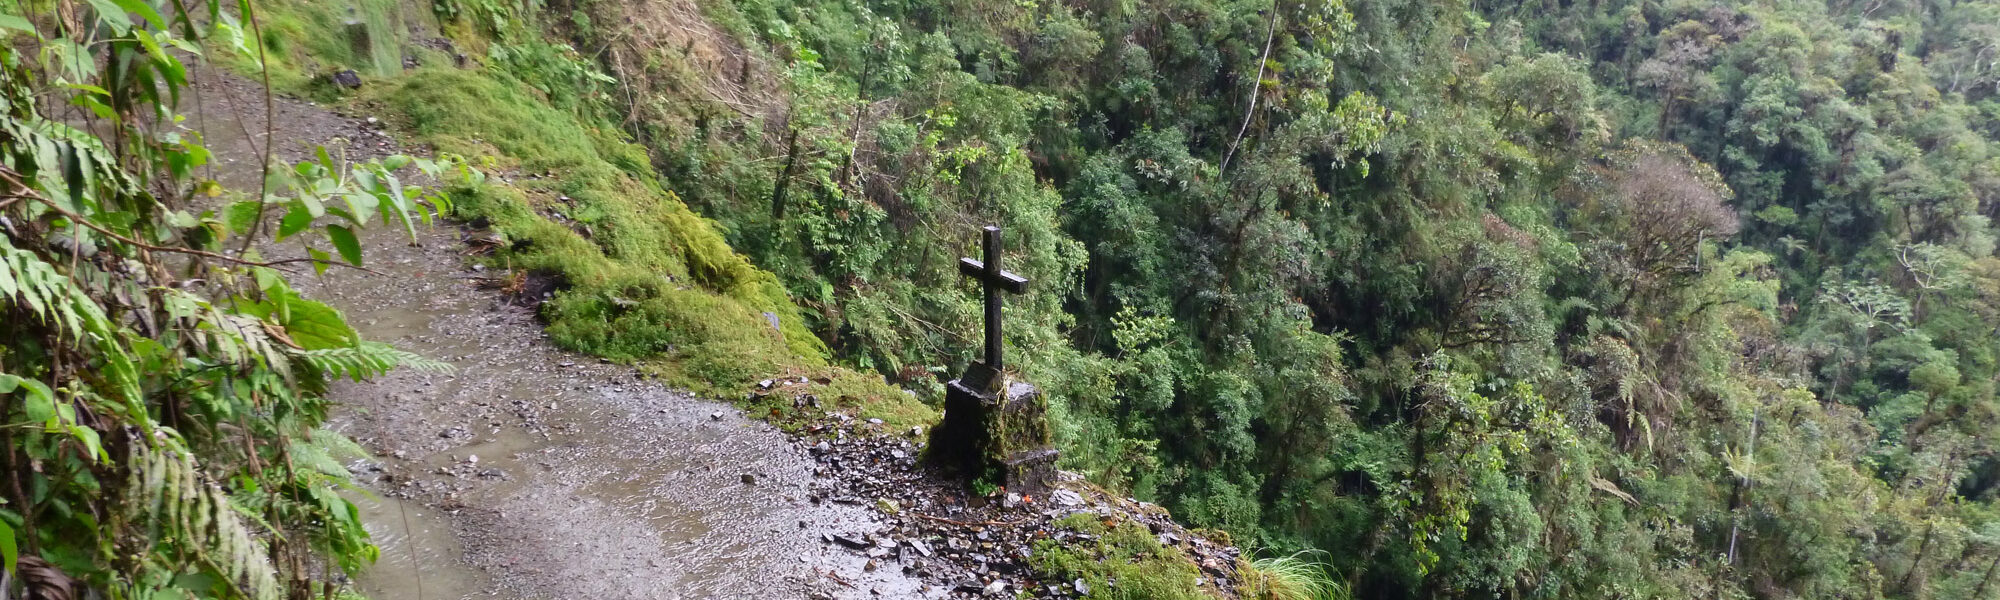 Reisverslaag Bolivia: We survived the Death Road - Kruizen herinneren aan fatale ongelukken